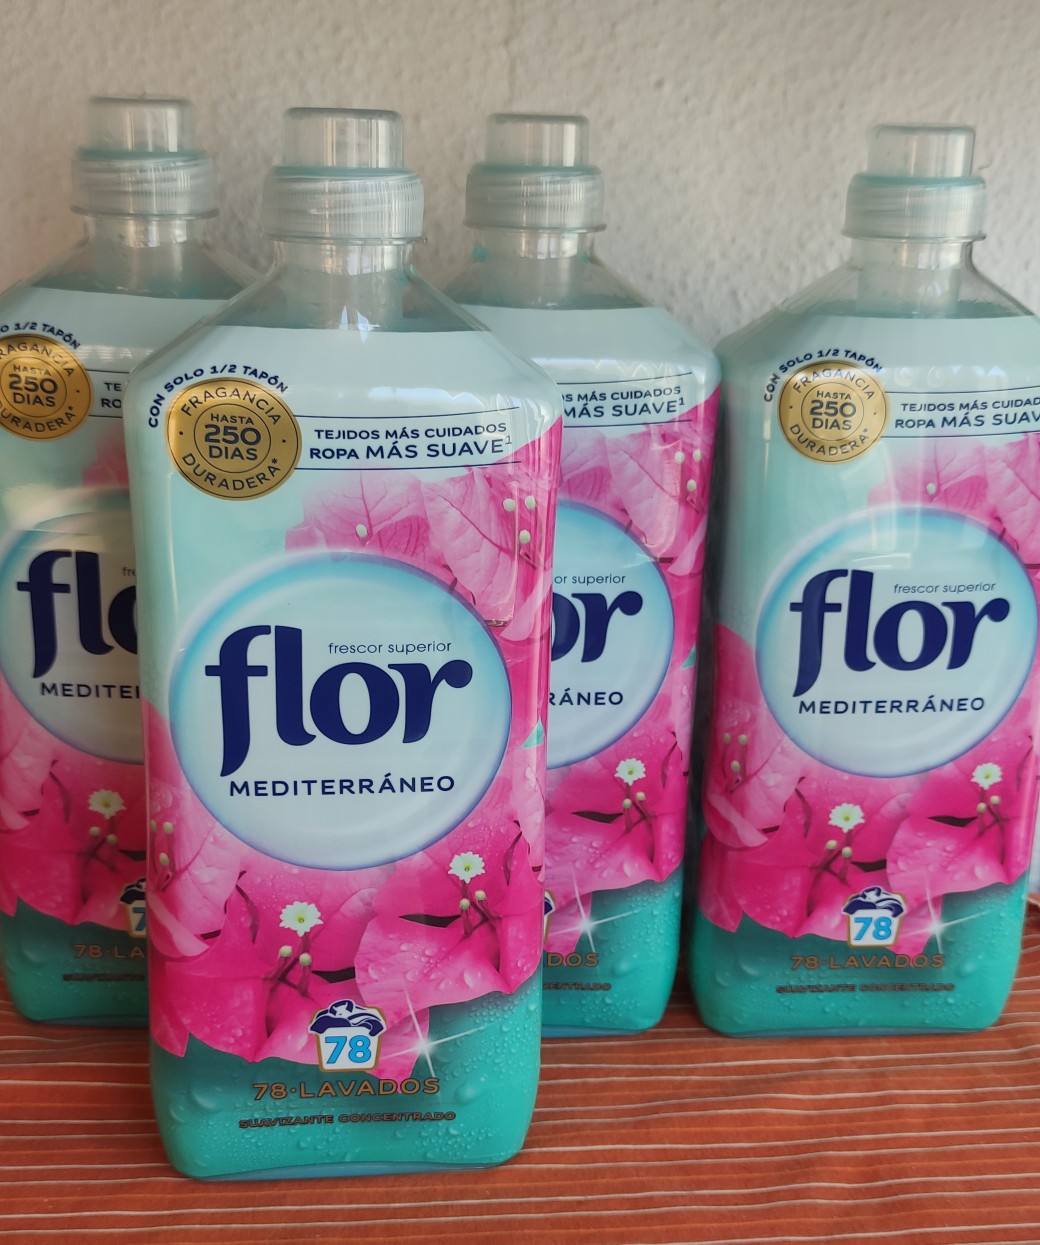 Oferta Flash! Suavizante concentrado Flor Delicado (624 lavados